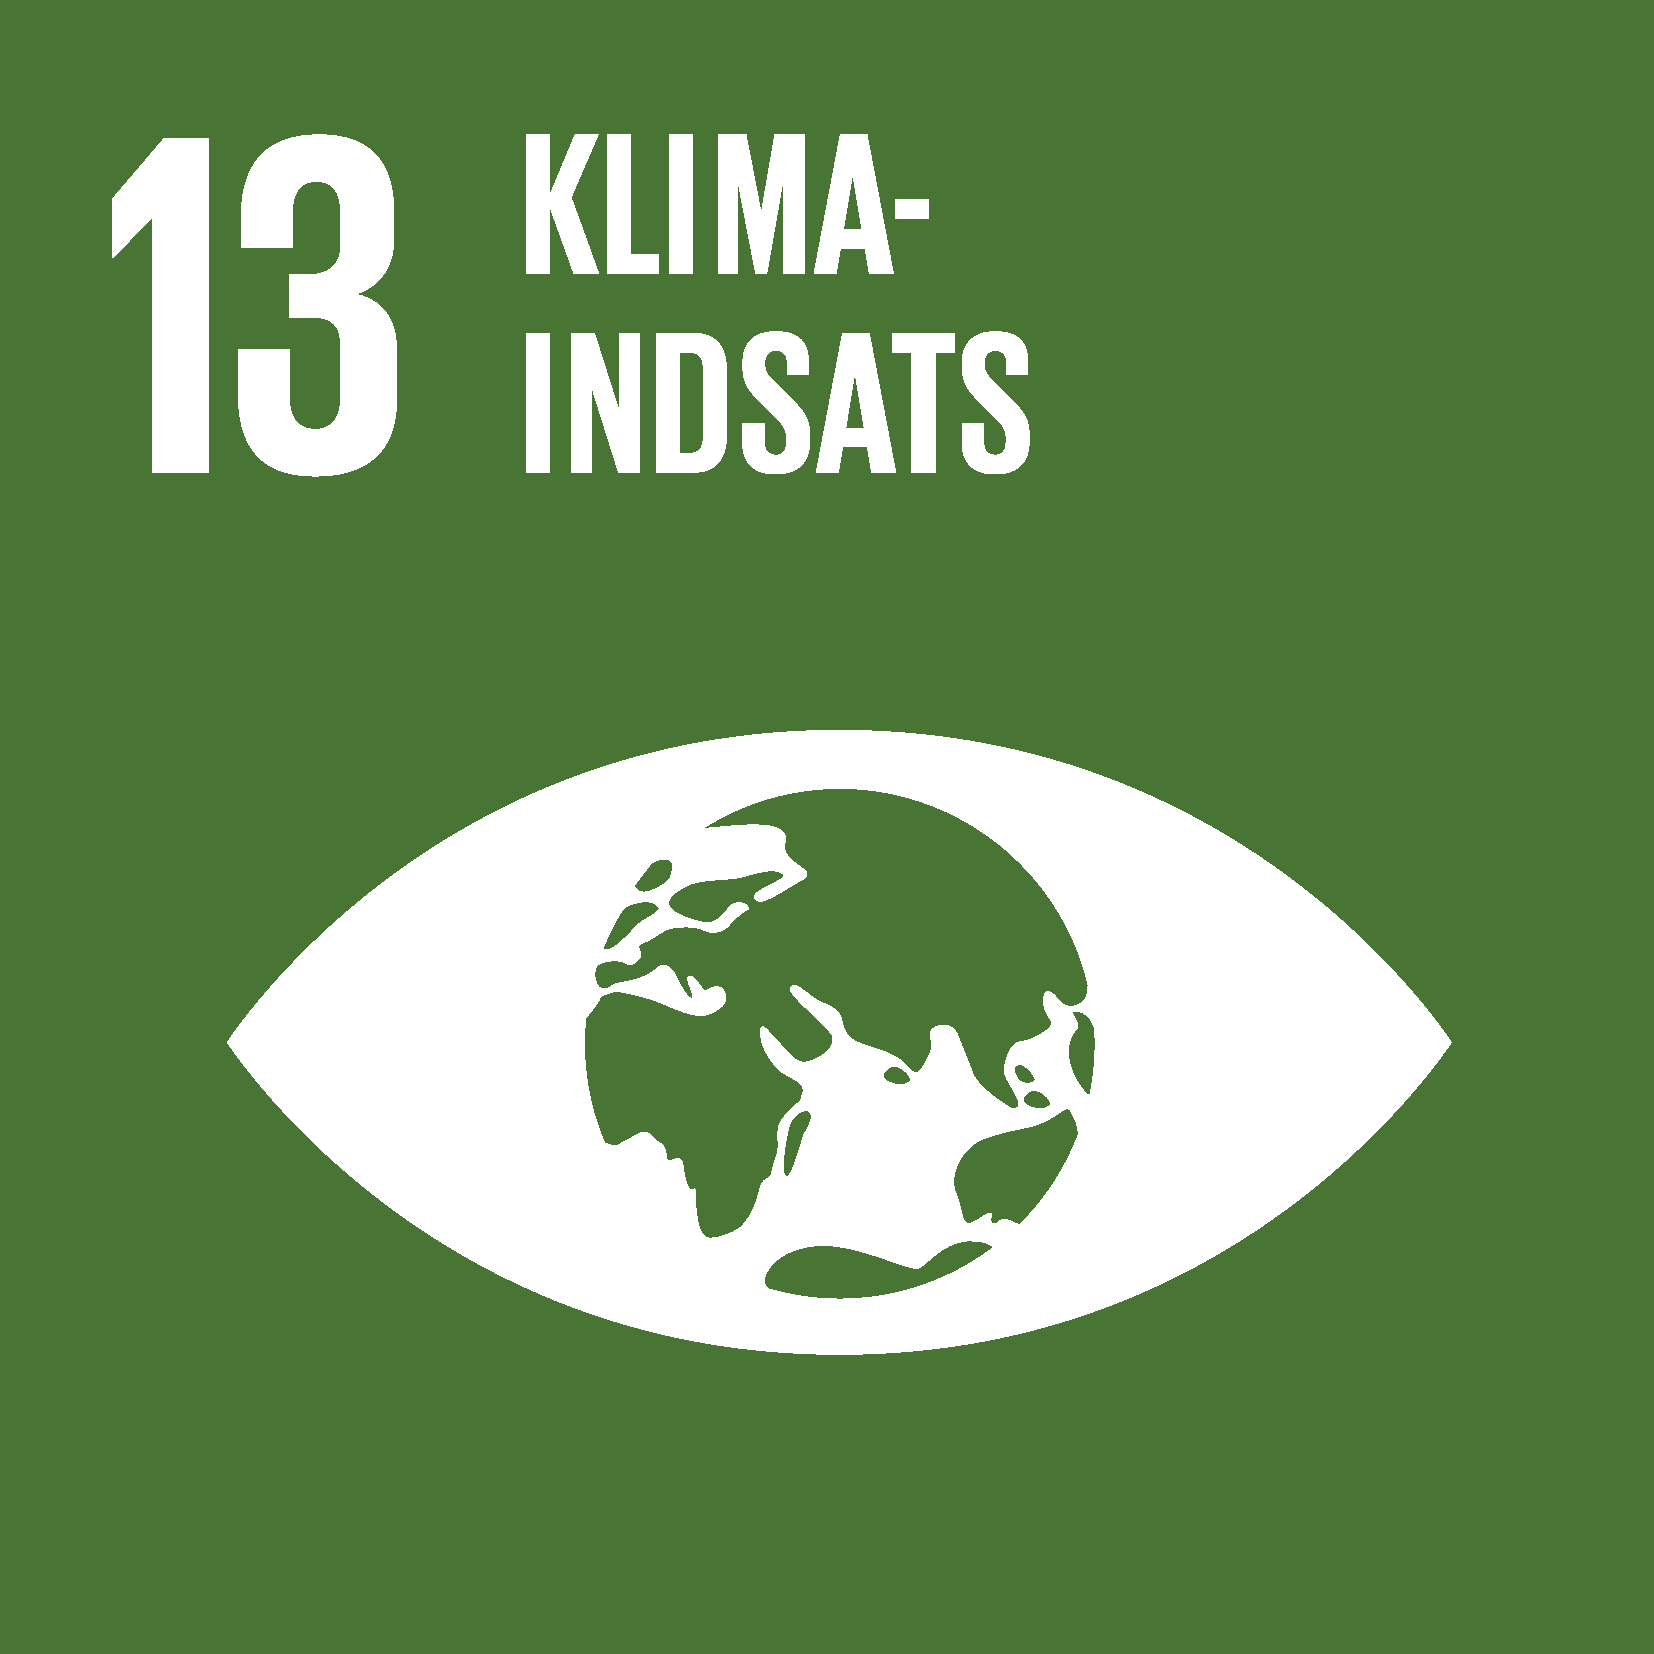 FN's Verdensmål for Bæredygtig Udvikling #13